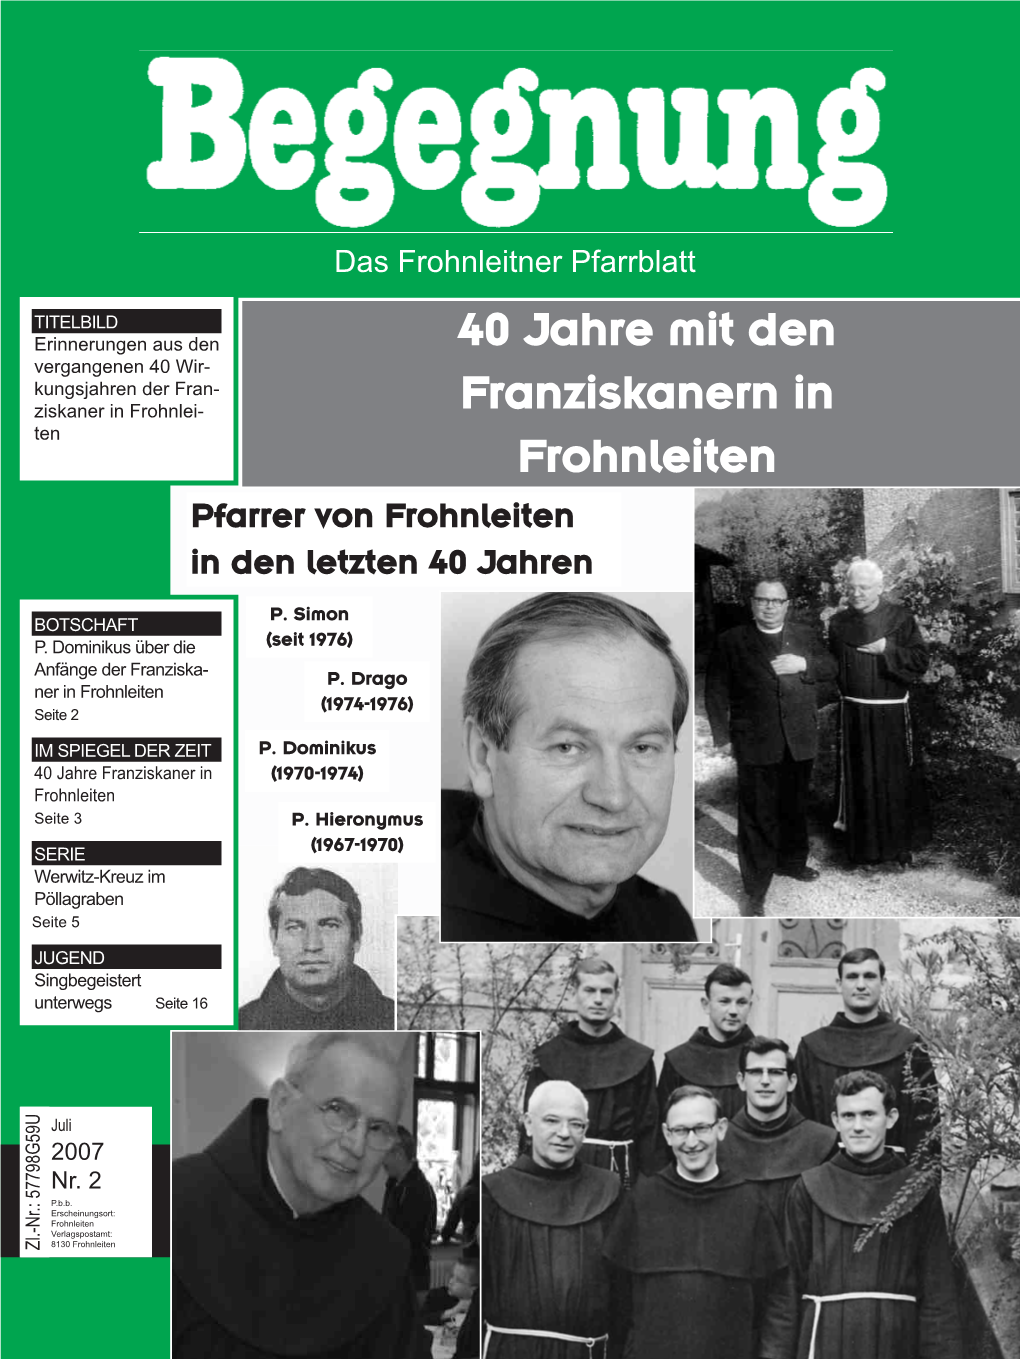 166483Begegnung 2007-02.Qxd